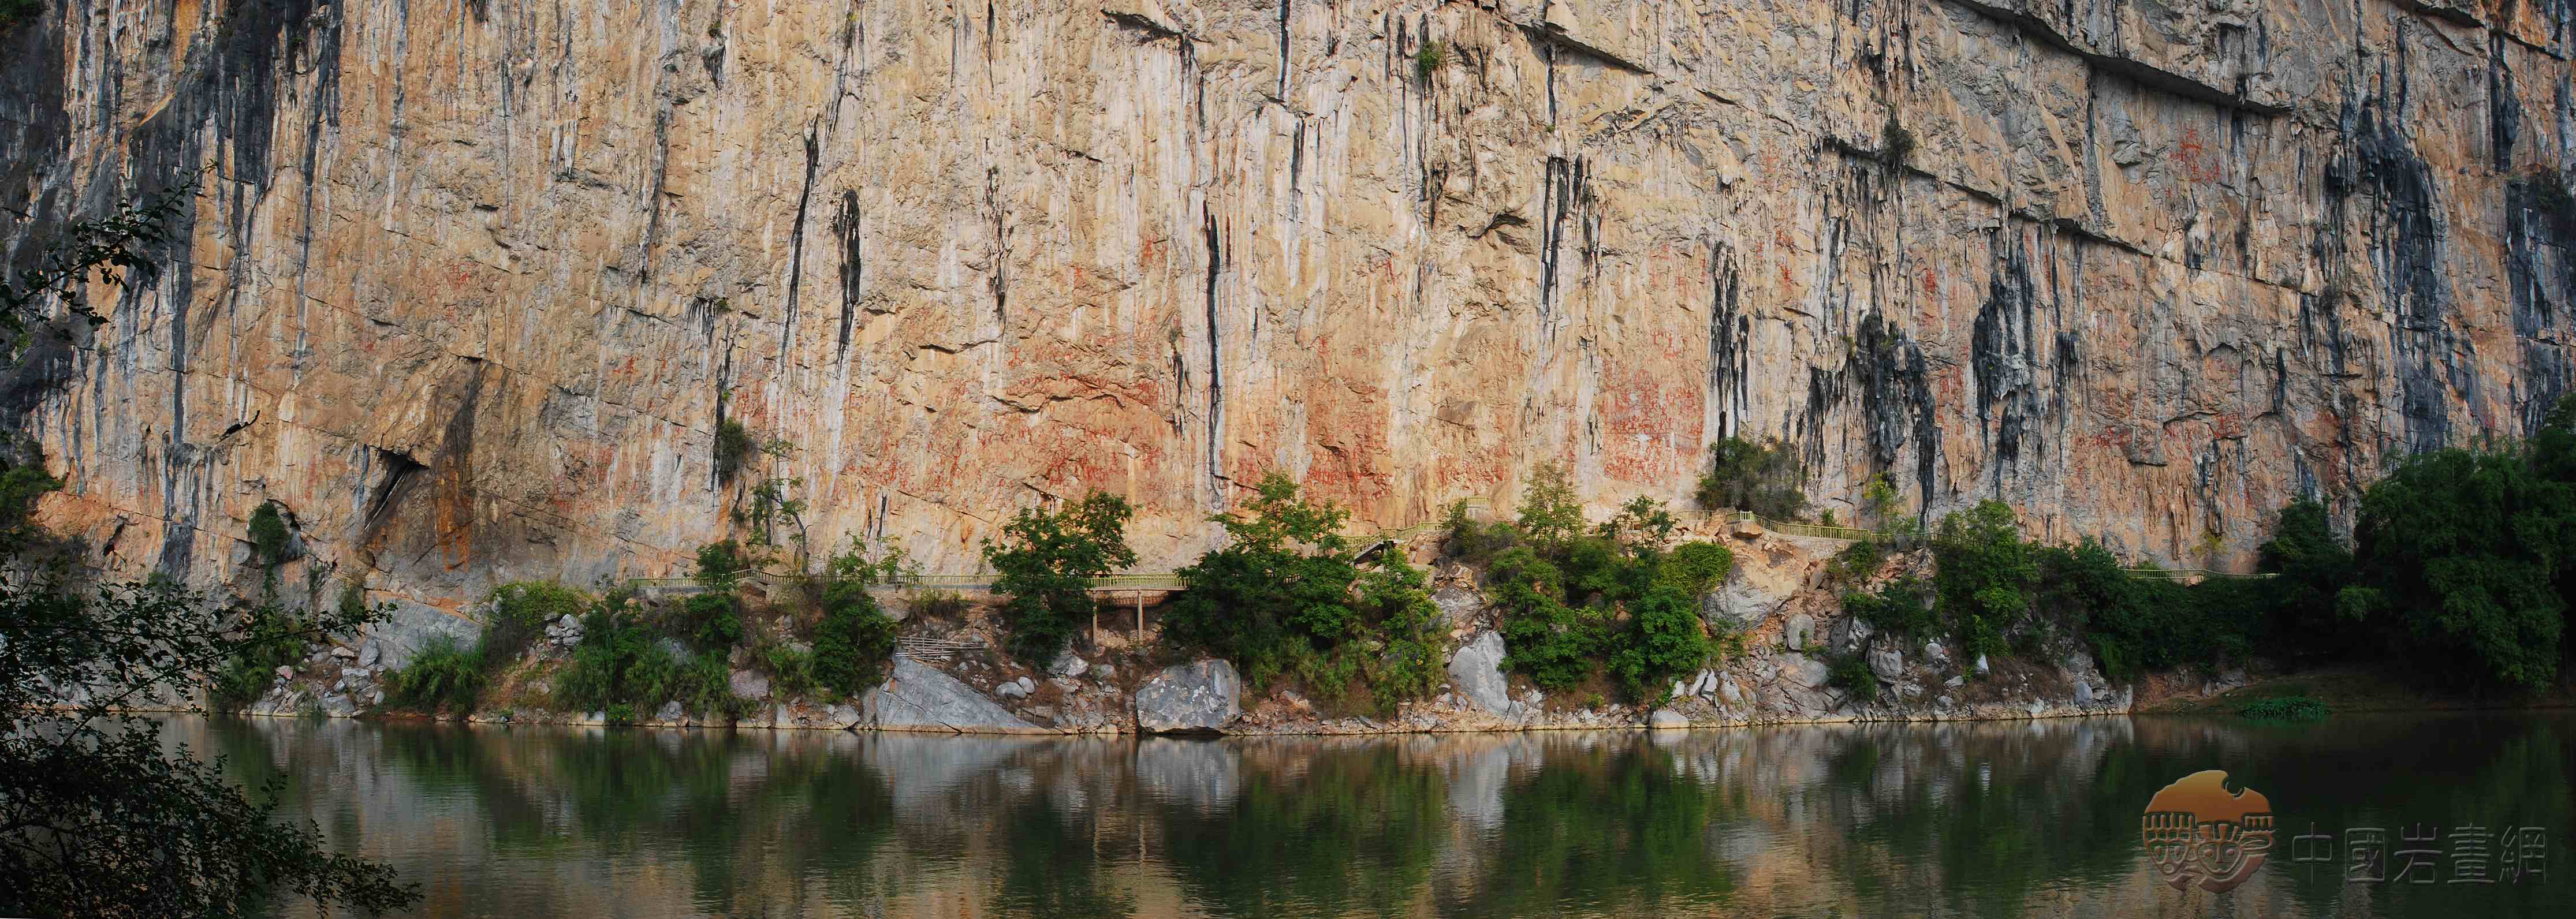 	广西左江花山岩画文化景观入选世界文化遗产名录，填补中国岩画类世界文化遗产空白